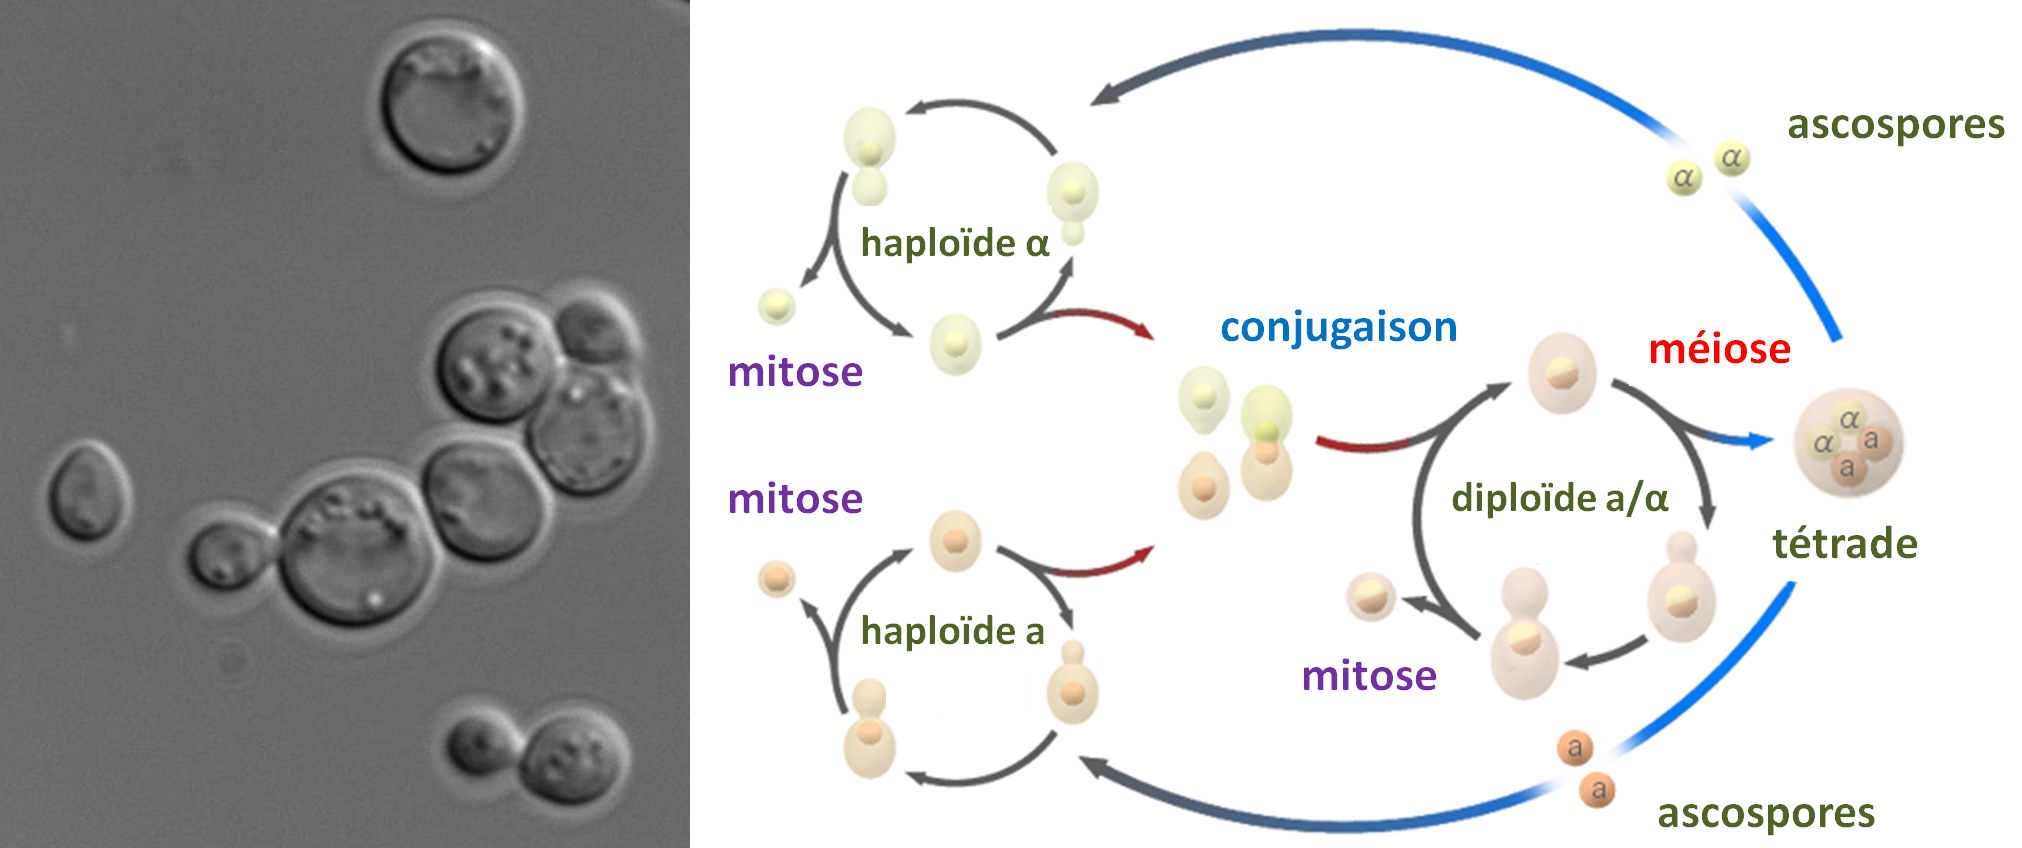 la levure de boulanger Saccharomyces cerevisiae. Pour cette levure, il existe 2 types sexuels appelé mata et matα. Les cellules haploïdes mata ou matα, peuvent se diviser par mitose et générer des clones. La division s'effectue par bourgeonnement donnant deux cellules de tailles différentes : la cellule mère et la cellule fille (visible dans l'image à gauche). La conjugaison (équivalent à la fécondation) ne peut avoir lieu qu'entre une cellule haploïde mata et une cellule haploïde matα. La cellule diploïde résultant de la fusion peut aussi se diviser par mitose. Lorsque se produit une carence en nutriments, la cellule effectue une méiose. Celle-ci ne peut se produire que dans une cellule diploïde mata/matα. Elle produit 4 spores haploïdes empaquetées dans un asque que l'on appelle une tétrade; les spores sont alors appelées des ascospores. Deux ascospores seront mata et les deux autres matα.